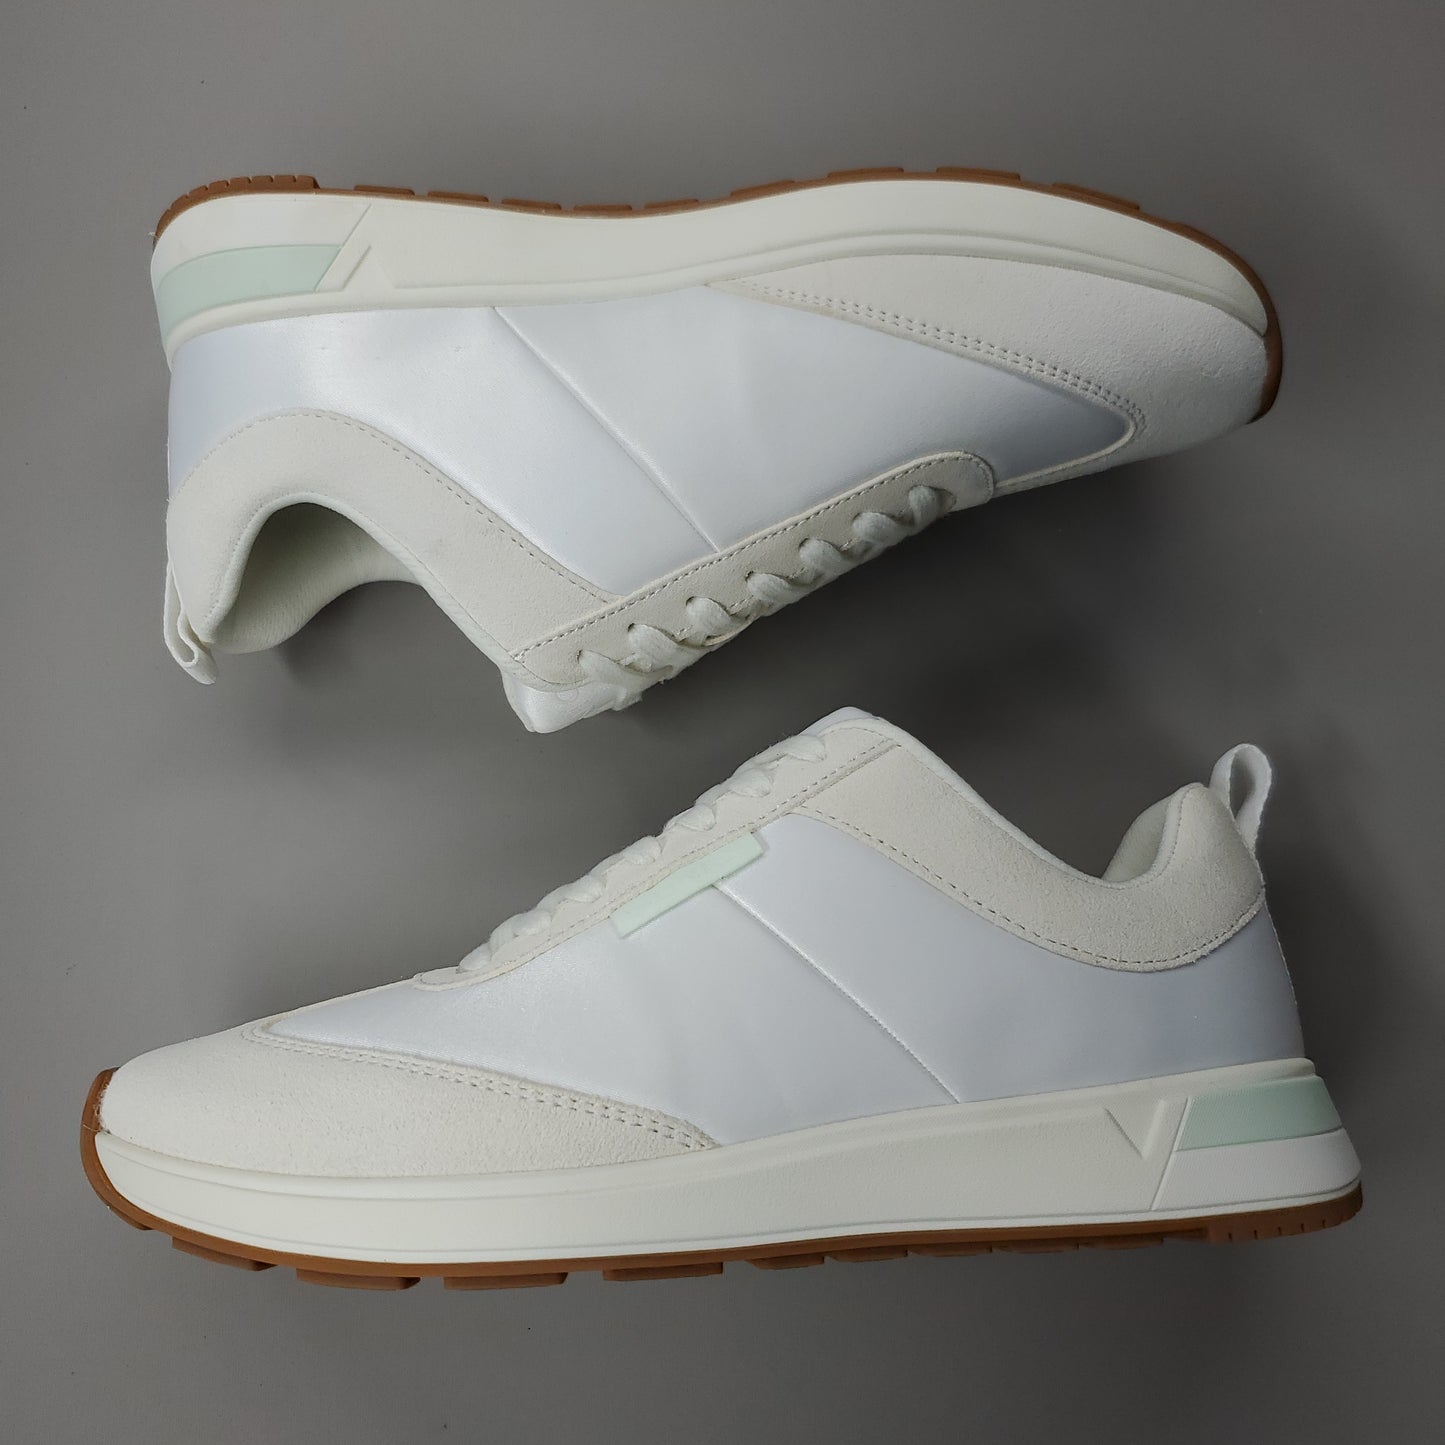 VIONIC Breilyn Satin Sneaker Shoe Women's Sz 9 M Beige/White H7707M4251 (New)